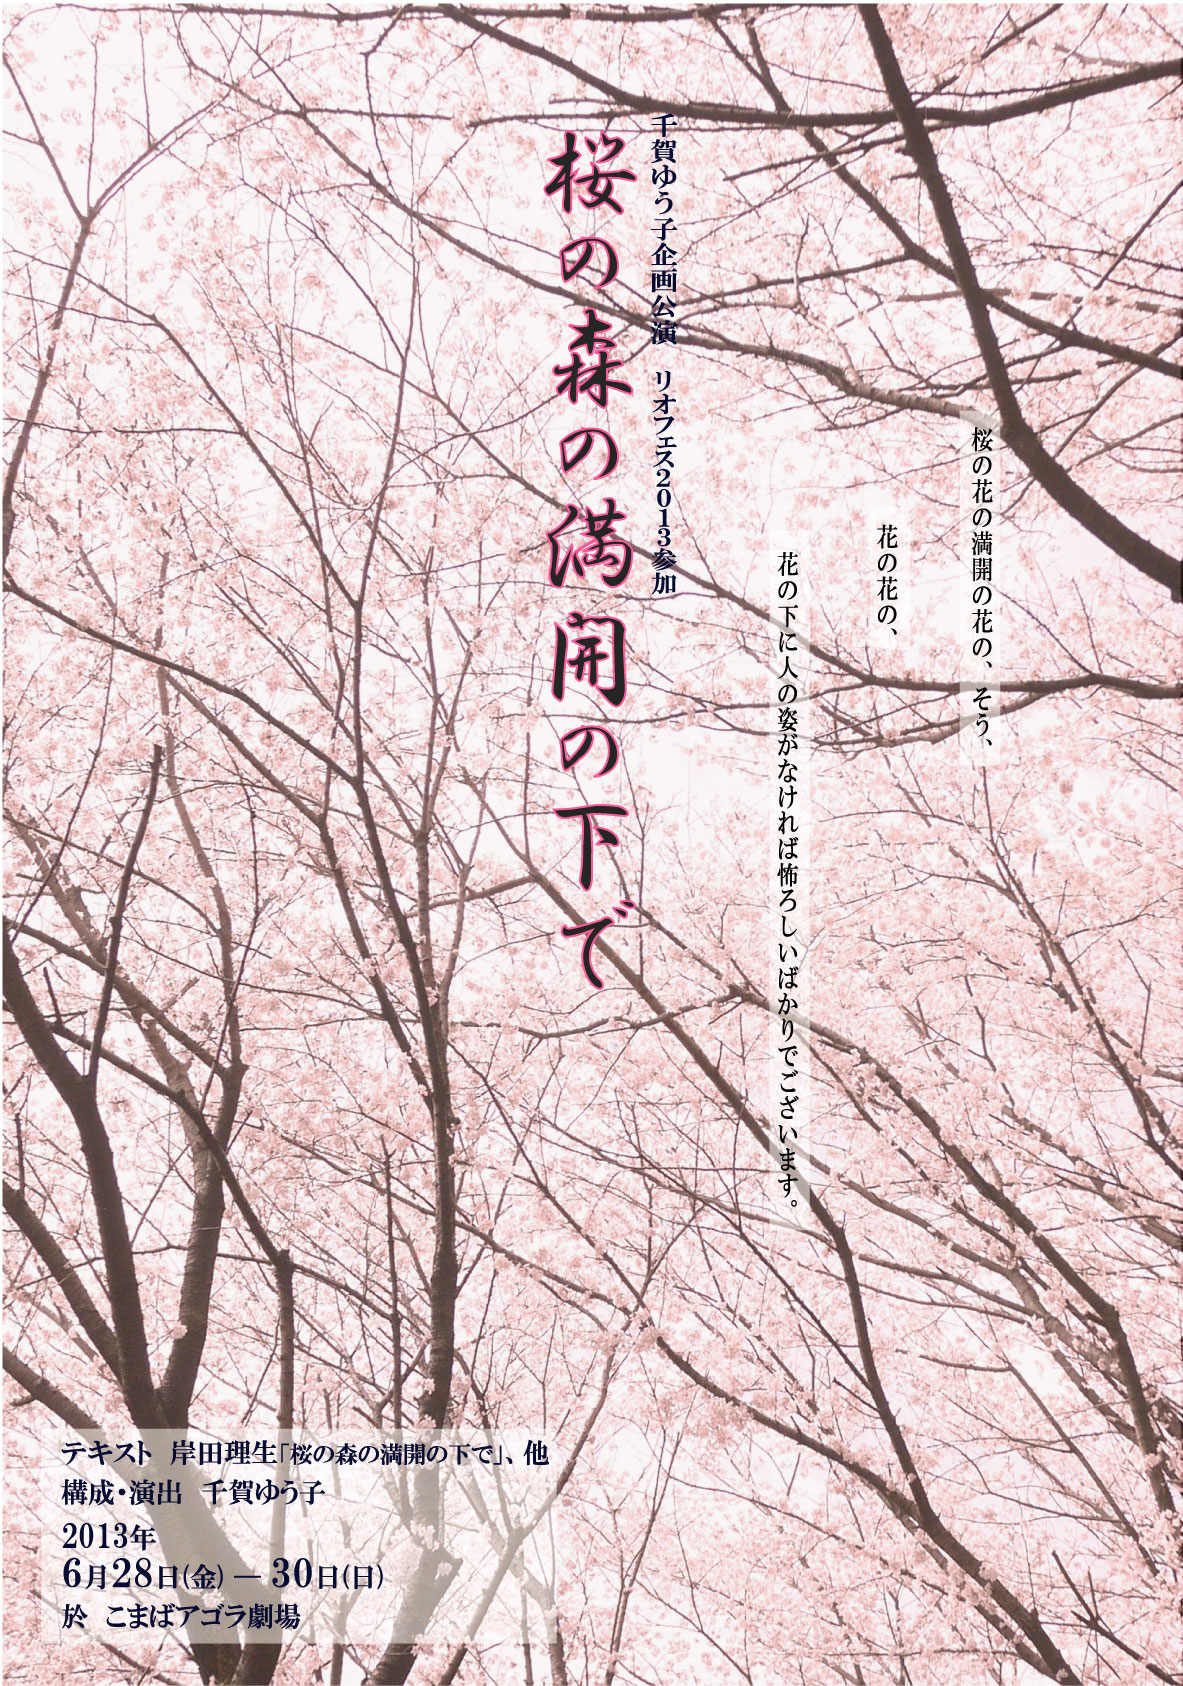 千賀ゆう子企画 『桜の森の満開の下で』チラシ画像